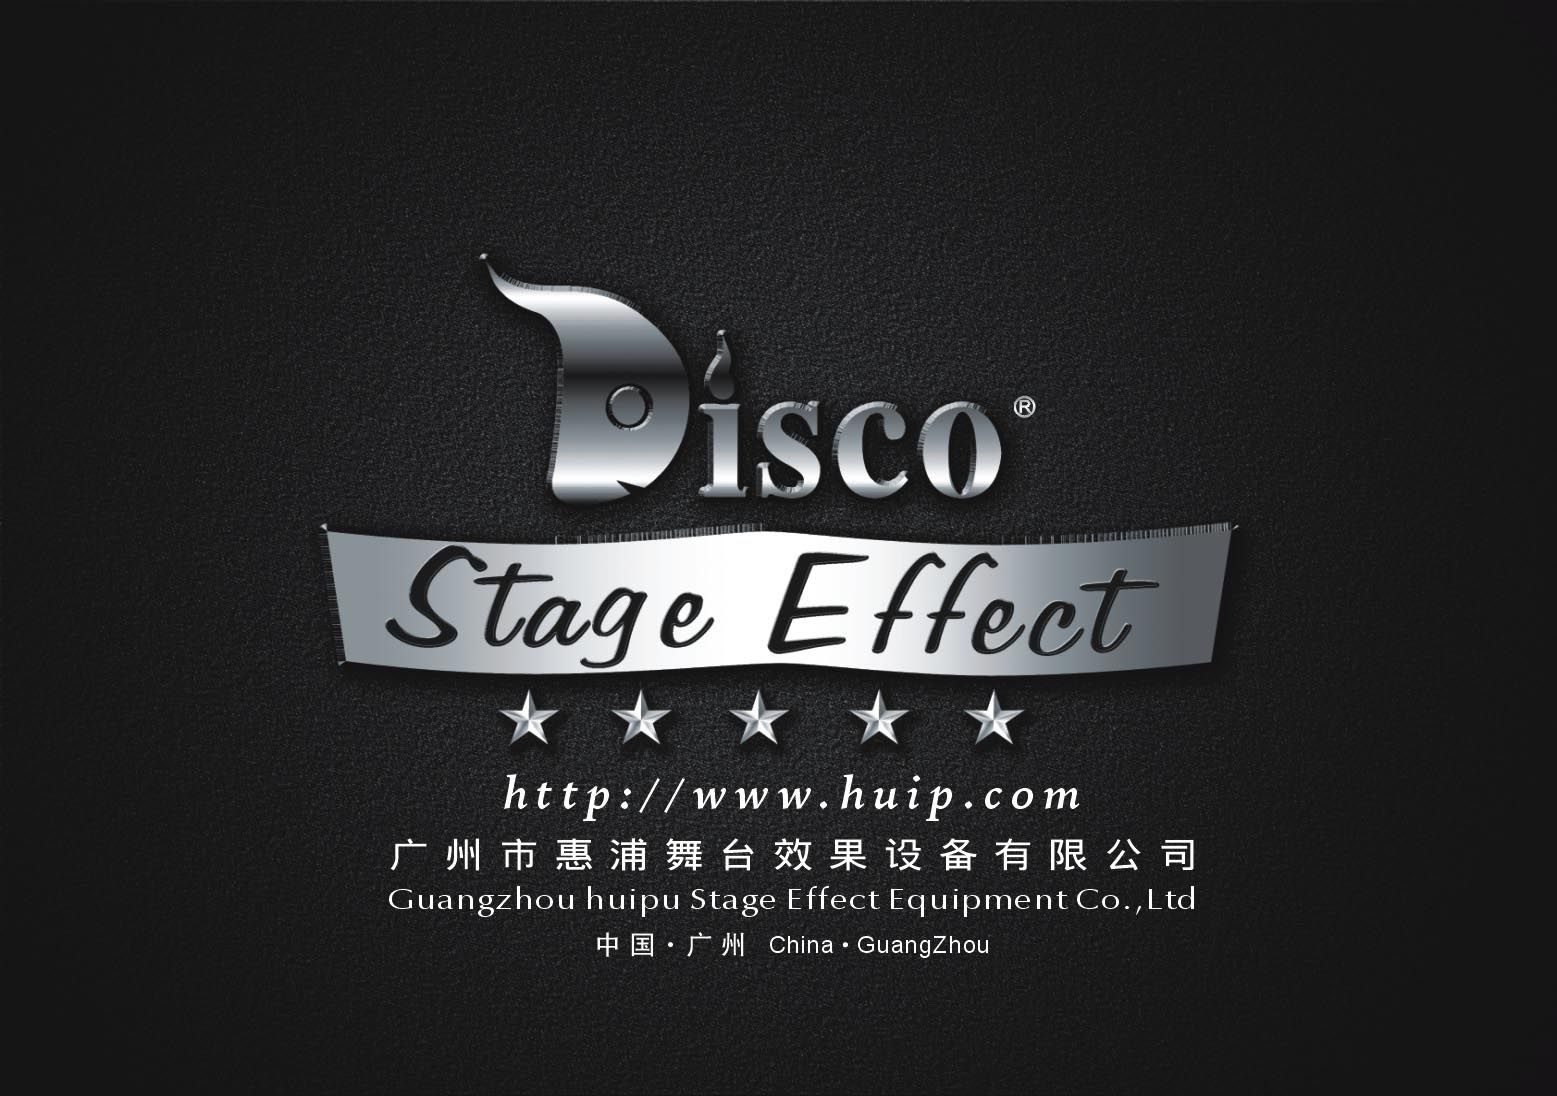 Guangzhou Huipu Stage Effect Equipment Co., Ltd Main Image